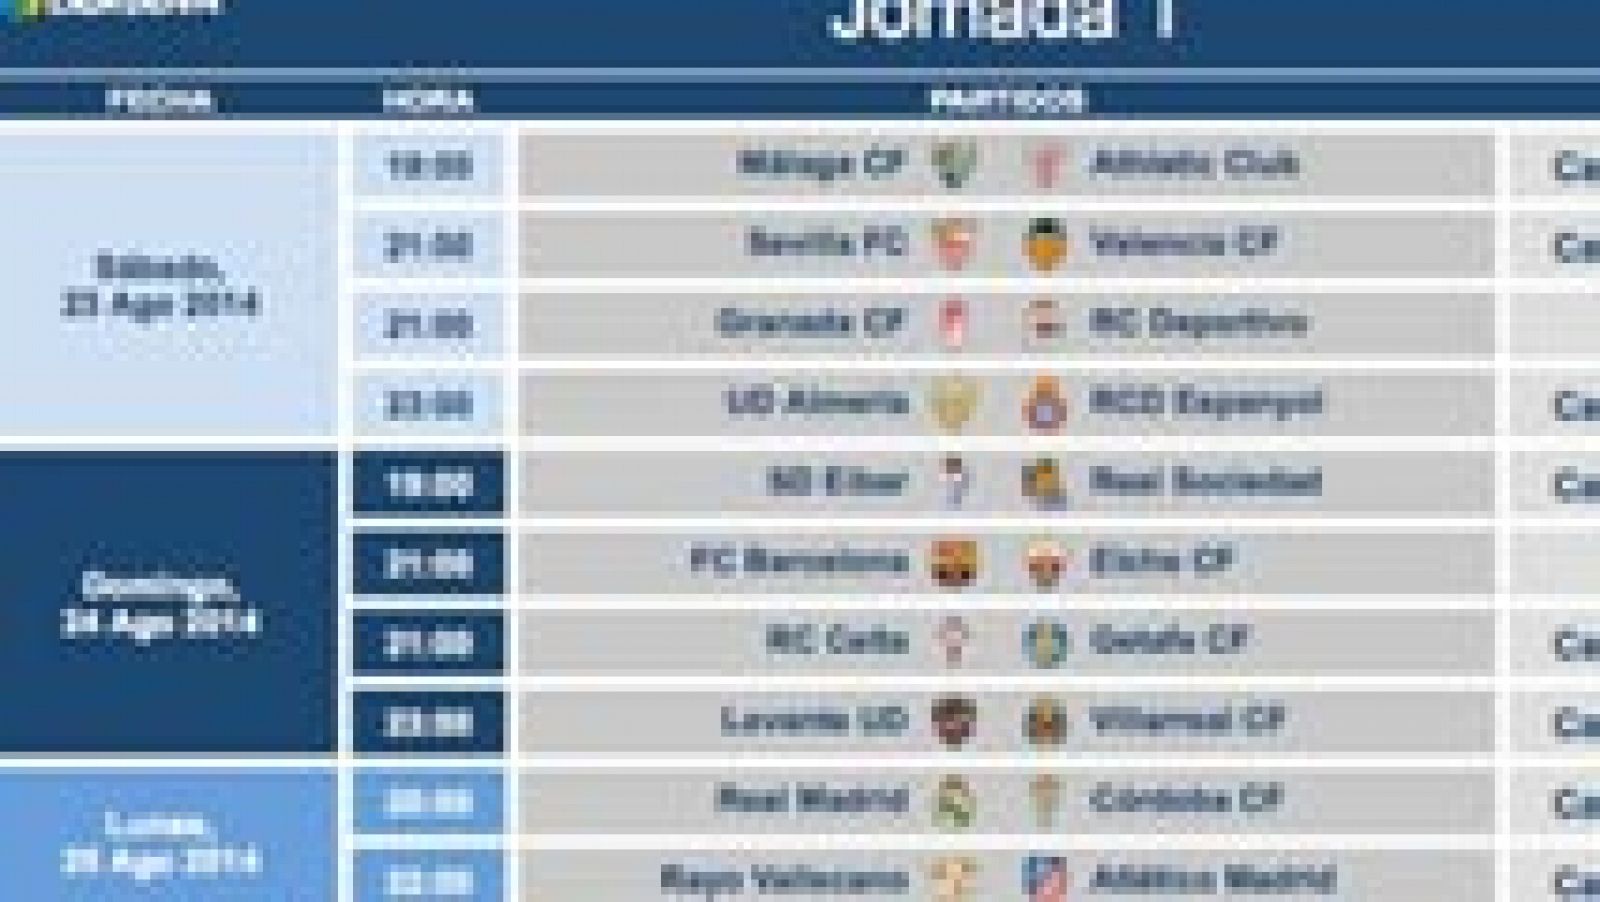 La Liga de Fútbol Profesional (LFP) ha modificado los horarios de los partidos de la primera jornada de la Liga BBVA Celta-Getafe y Sevilla-Valencia, programados para el viernes 22 de agosto pero que ahora pasan al sábado y domingo para no coincidir con el partido de vuelta de la Supercopa entre el Real Madrid y el Atlético de Madrid.